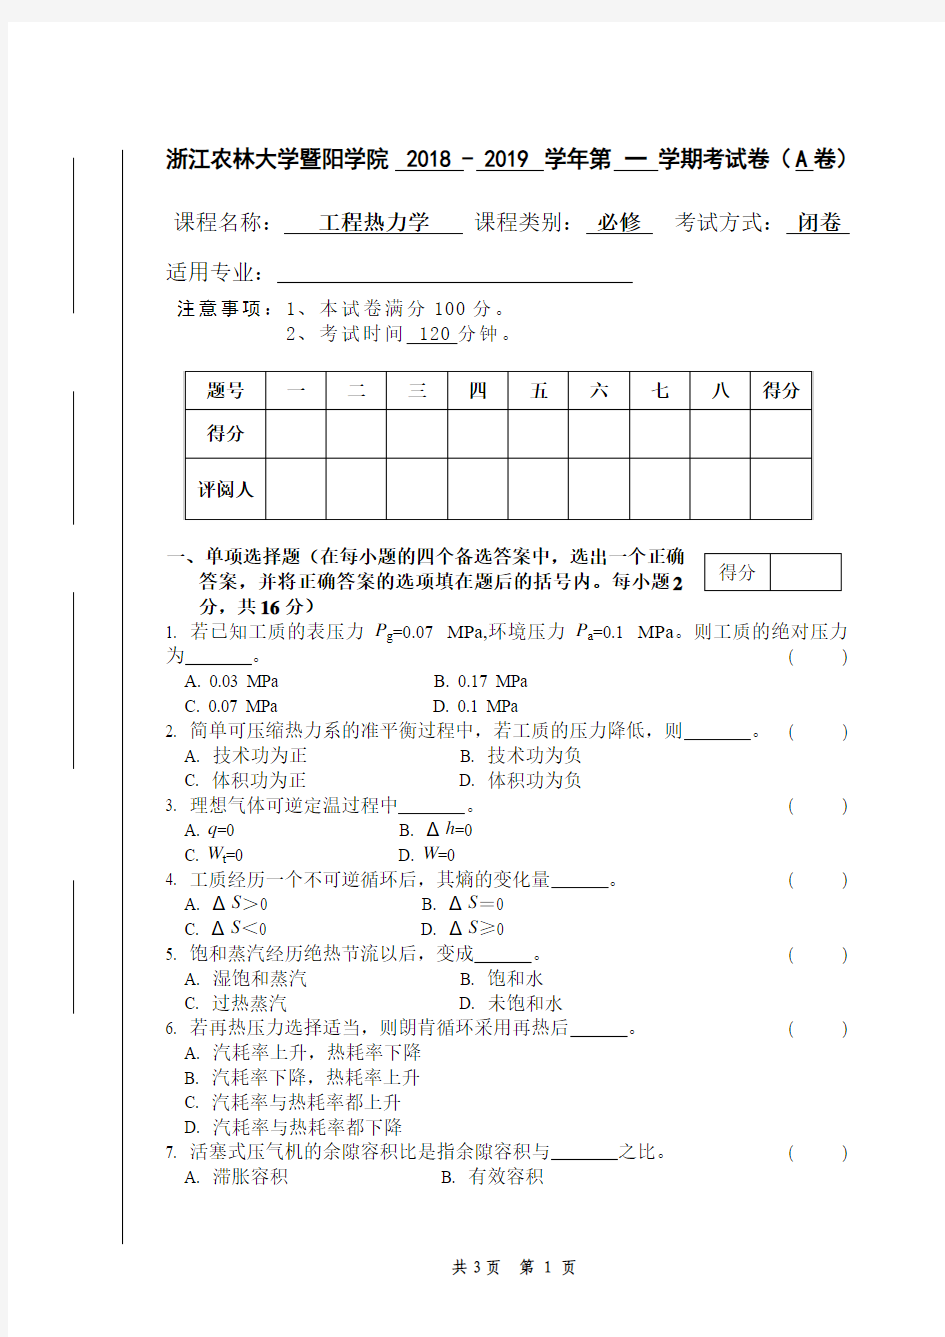 1、 附件1浙江农林大学暨阳学院考试卷模板格式范例